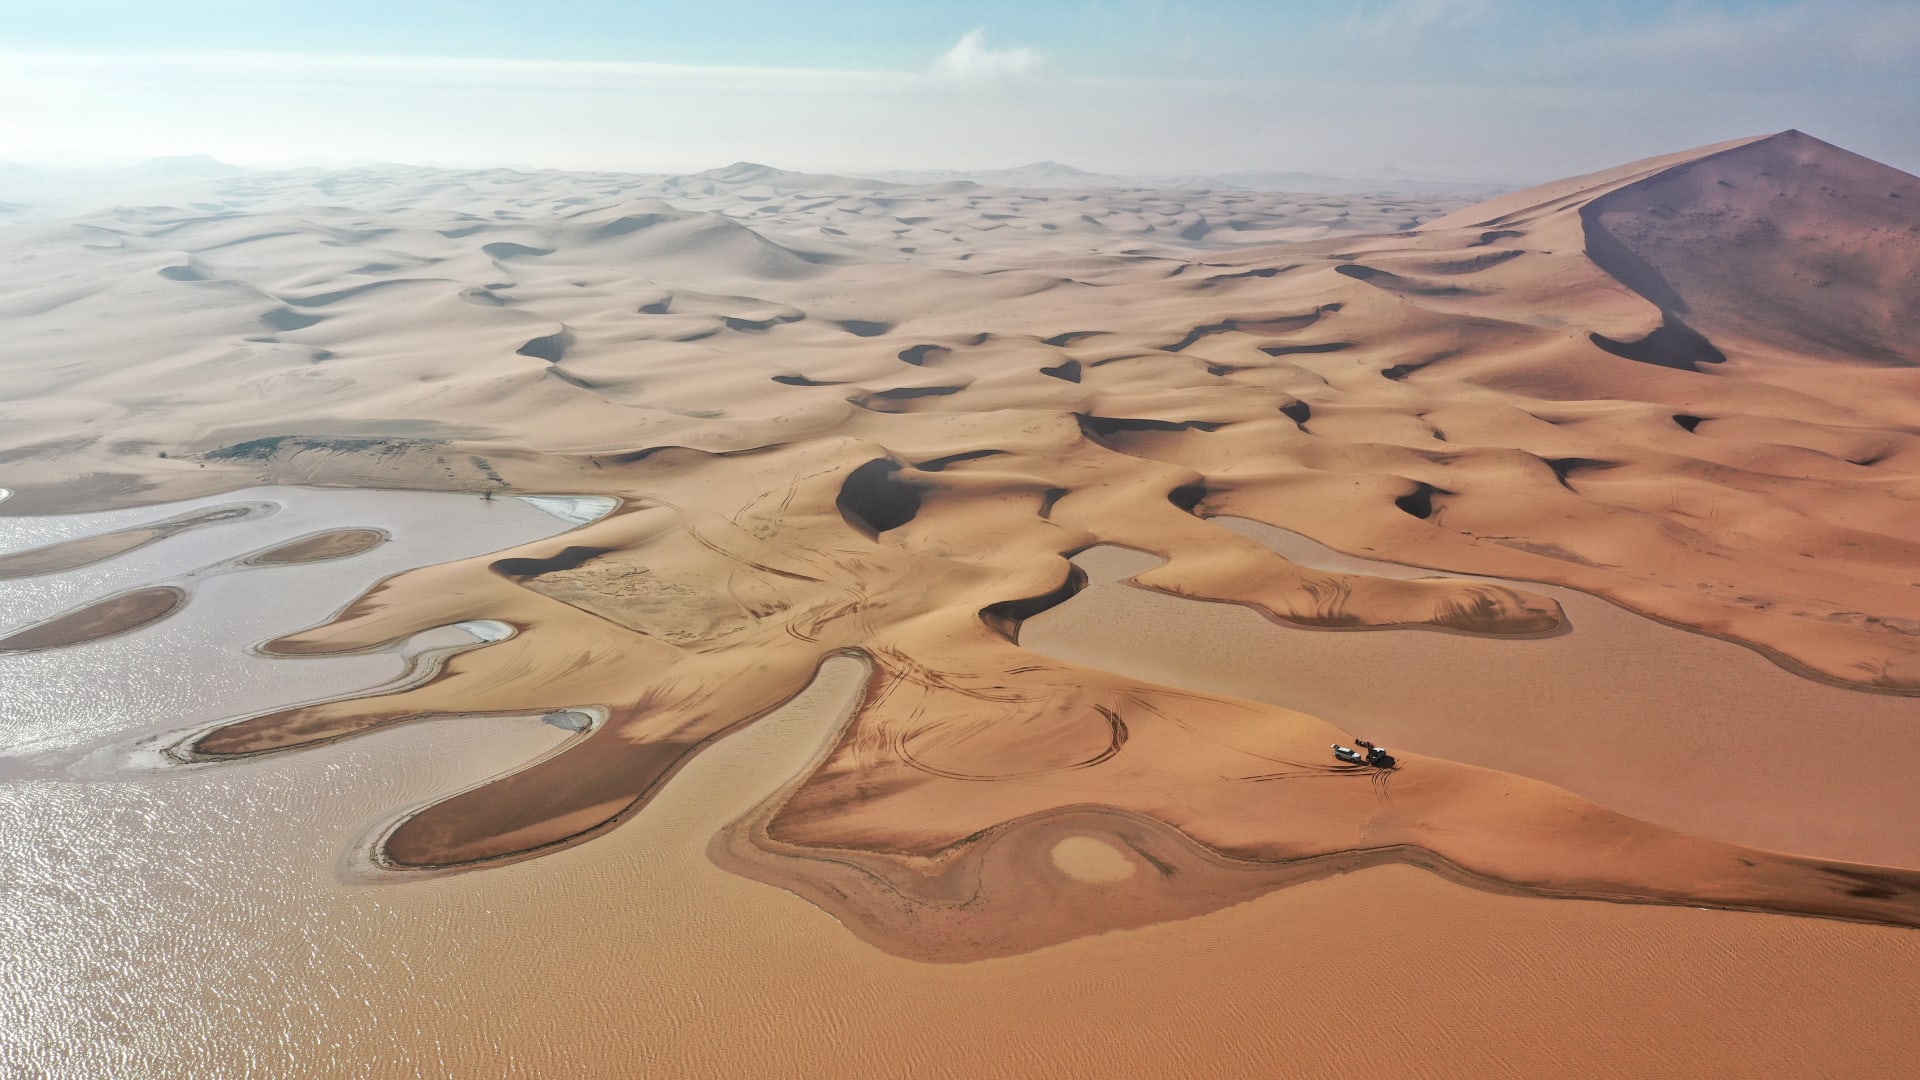 Après de fortes pluies en Arabie Saoudite... un photographe documente une scène magique de lacs au coeur du désert